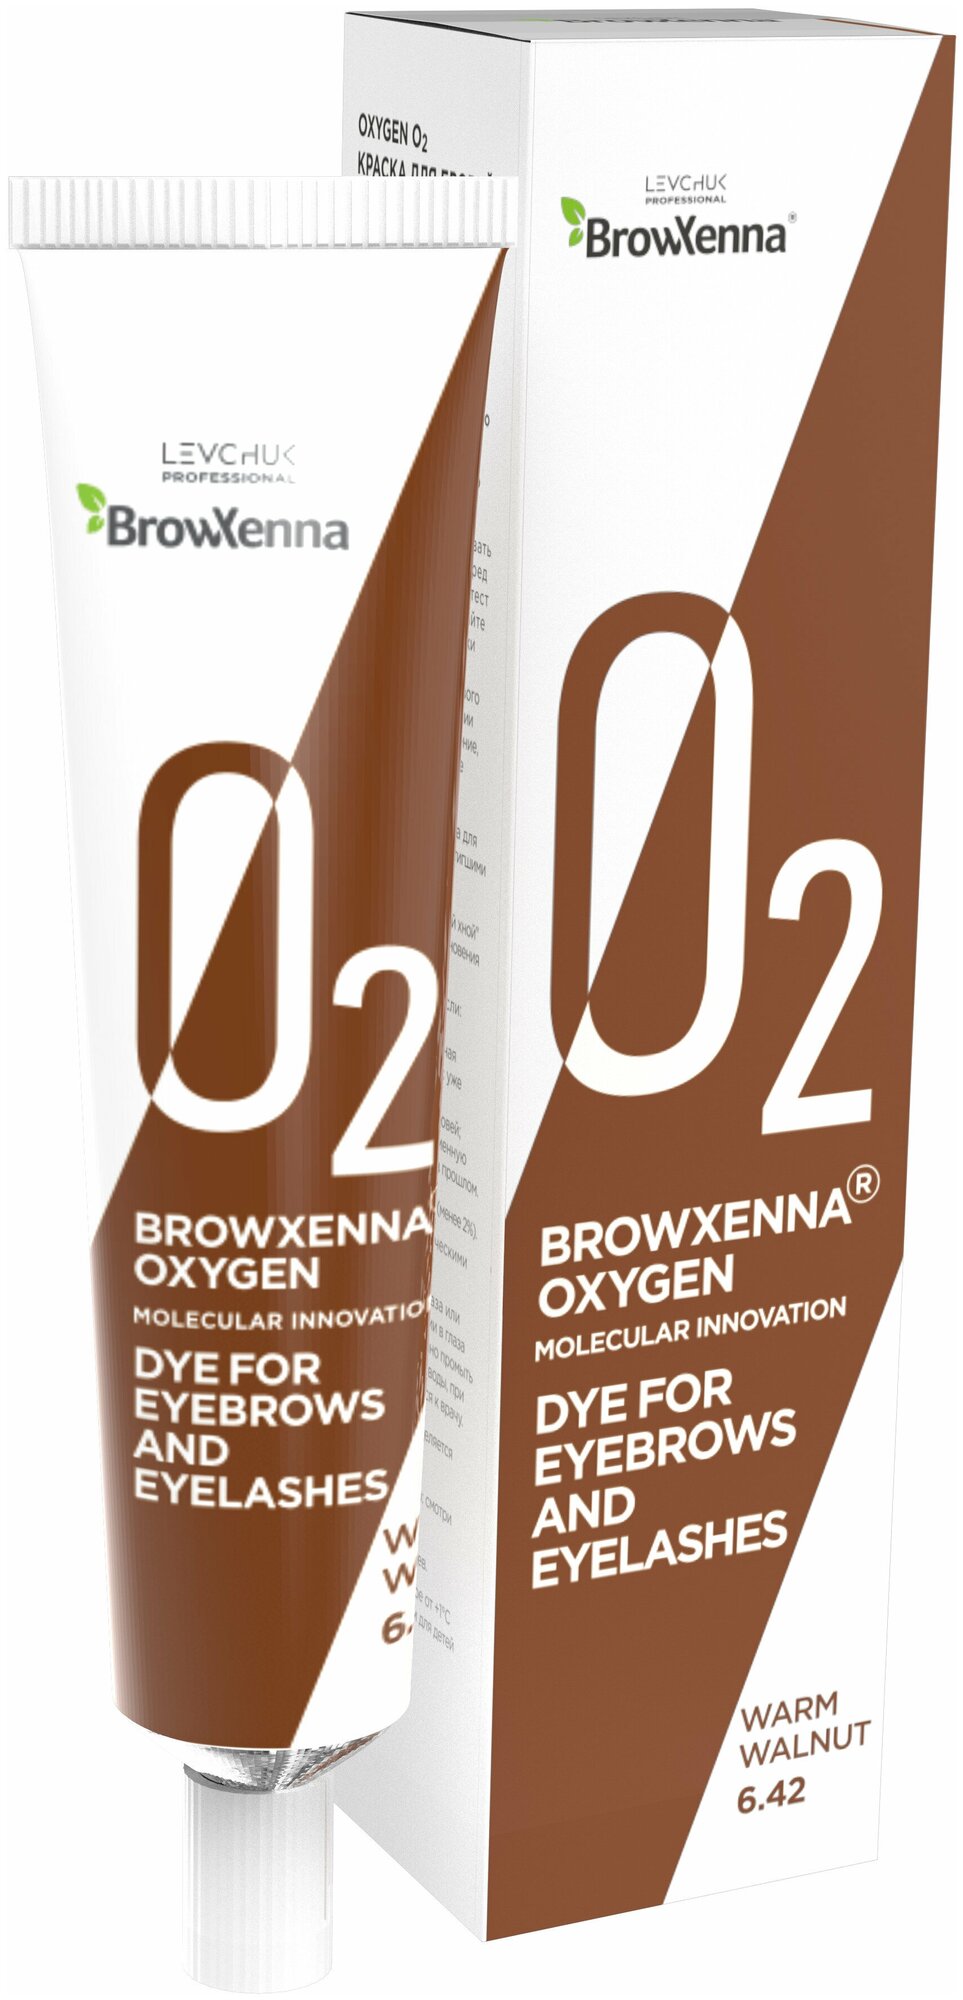 BrowXenna Oxygen O2 Краска для бровей и ресниц 15 мл, 6.42 warm walnut, 15 мл